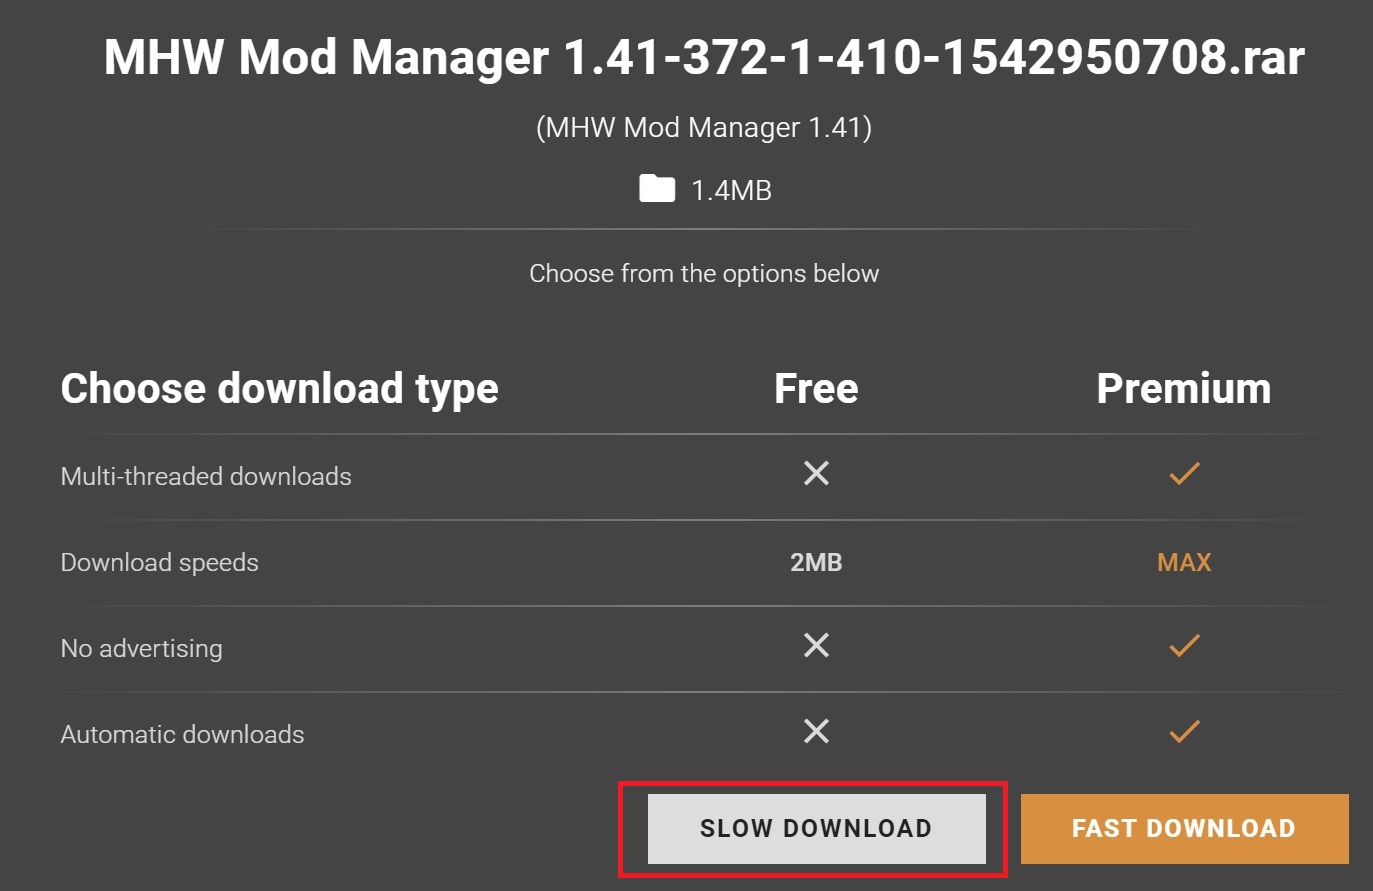 MHW-MOD_Managerのスロウダウンロードボタン